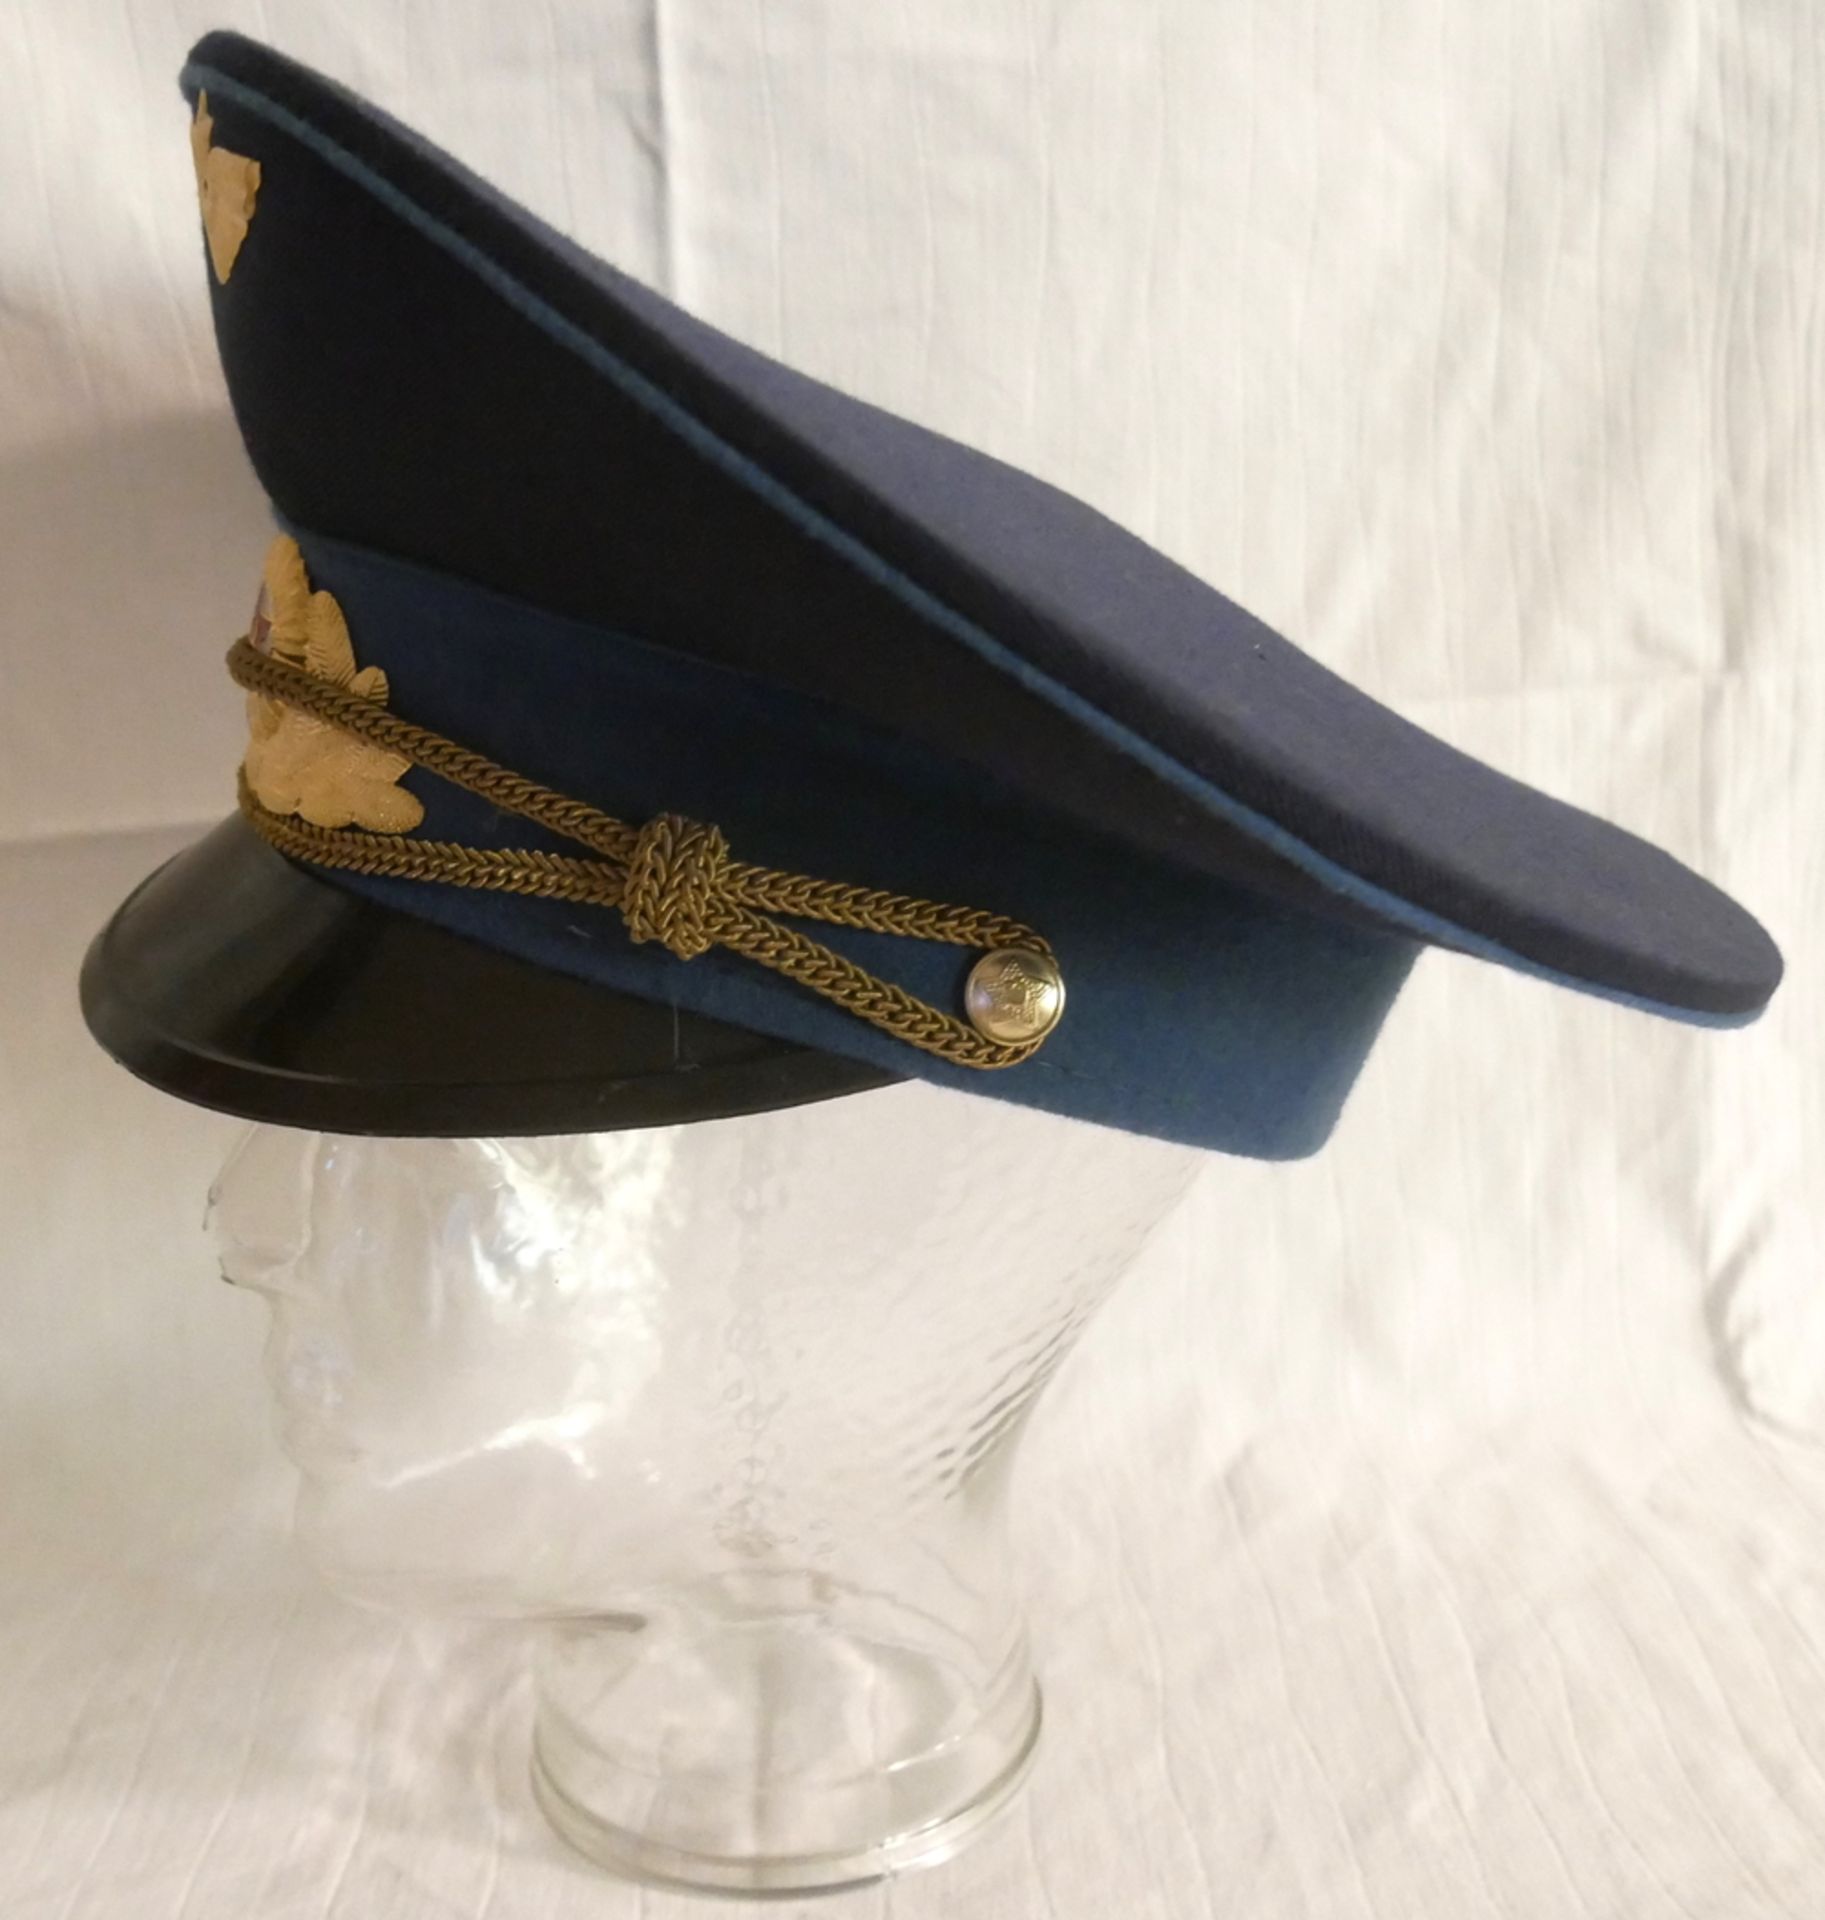 Uniformmütze UdSSR wohl eines Fallschirmjäger-Oberst. Sowjetunion. Größe 58 - Image 2 of 3